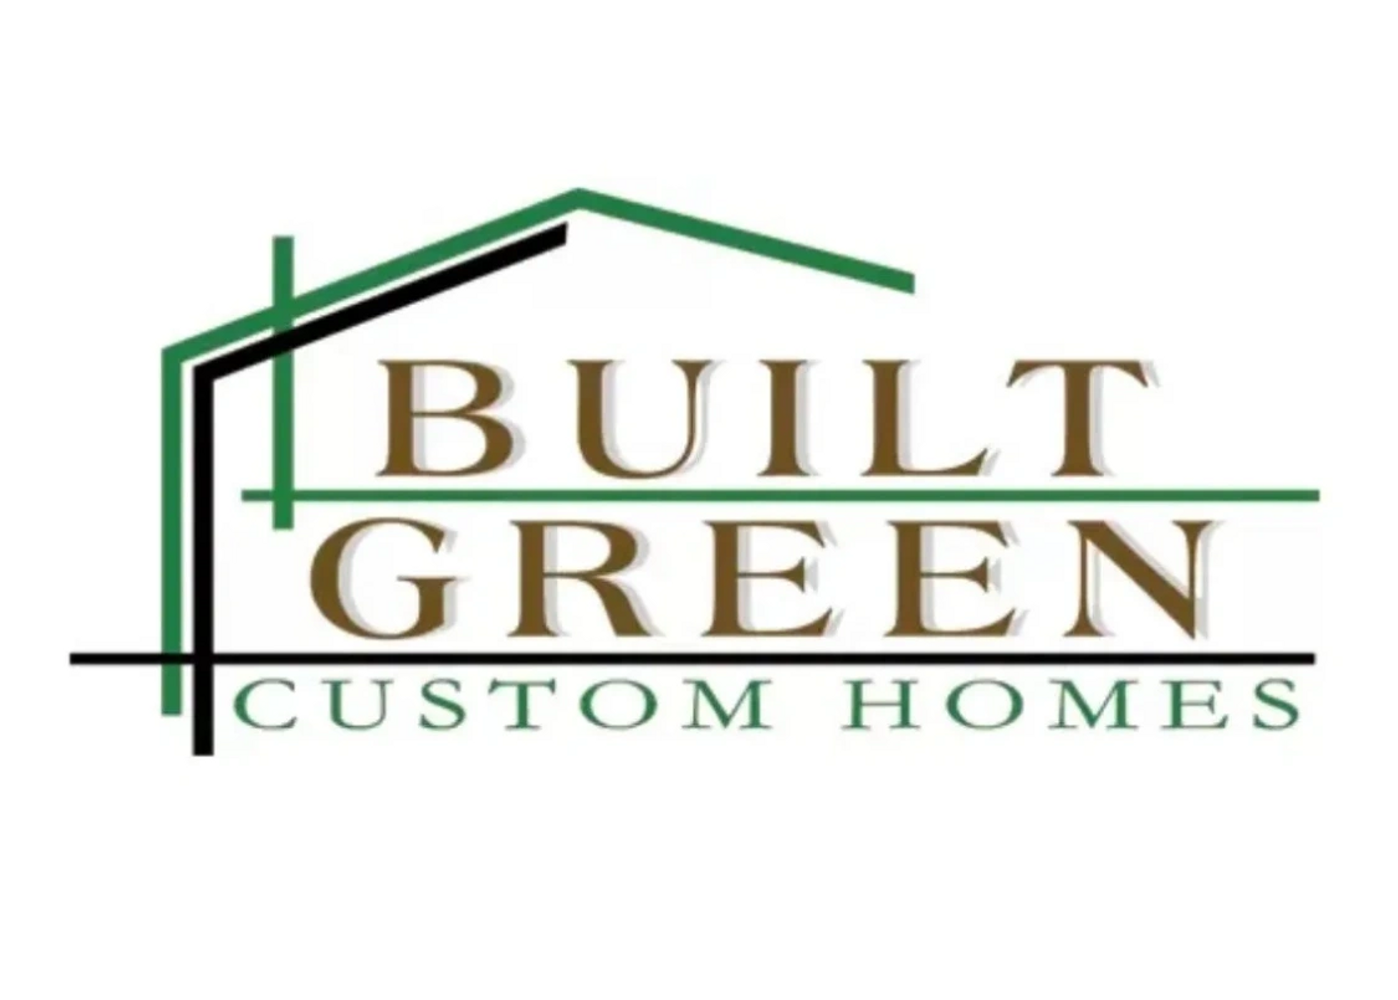 Built green custom home builder owner builder ubuildit logo